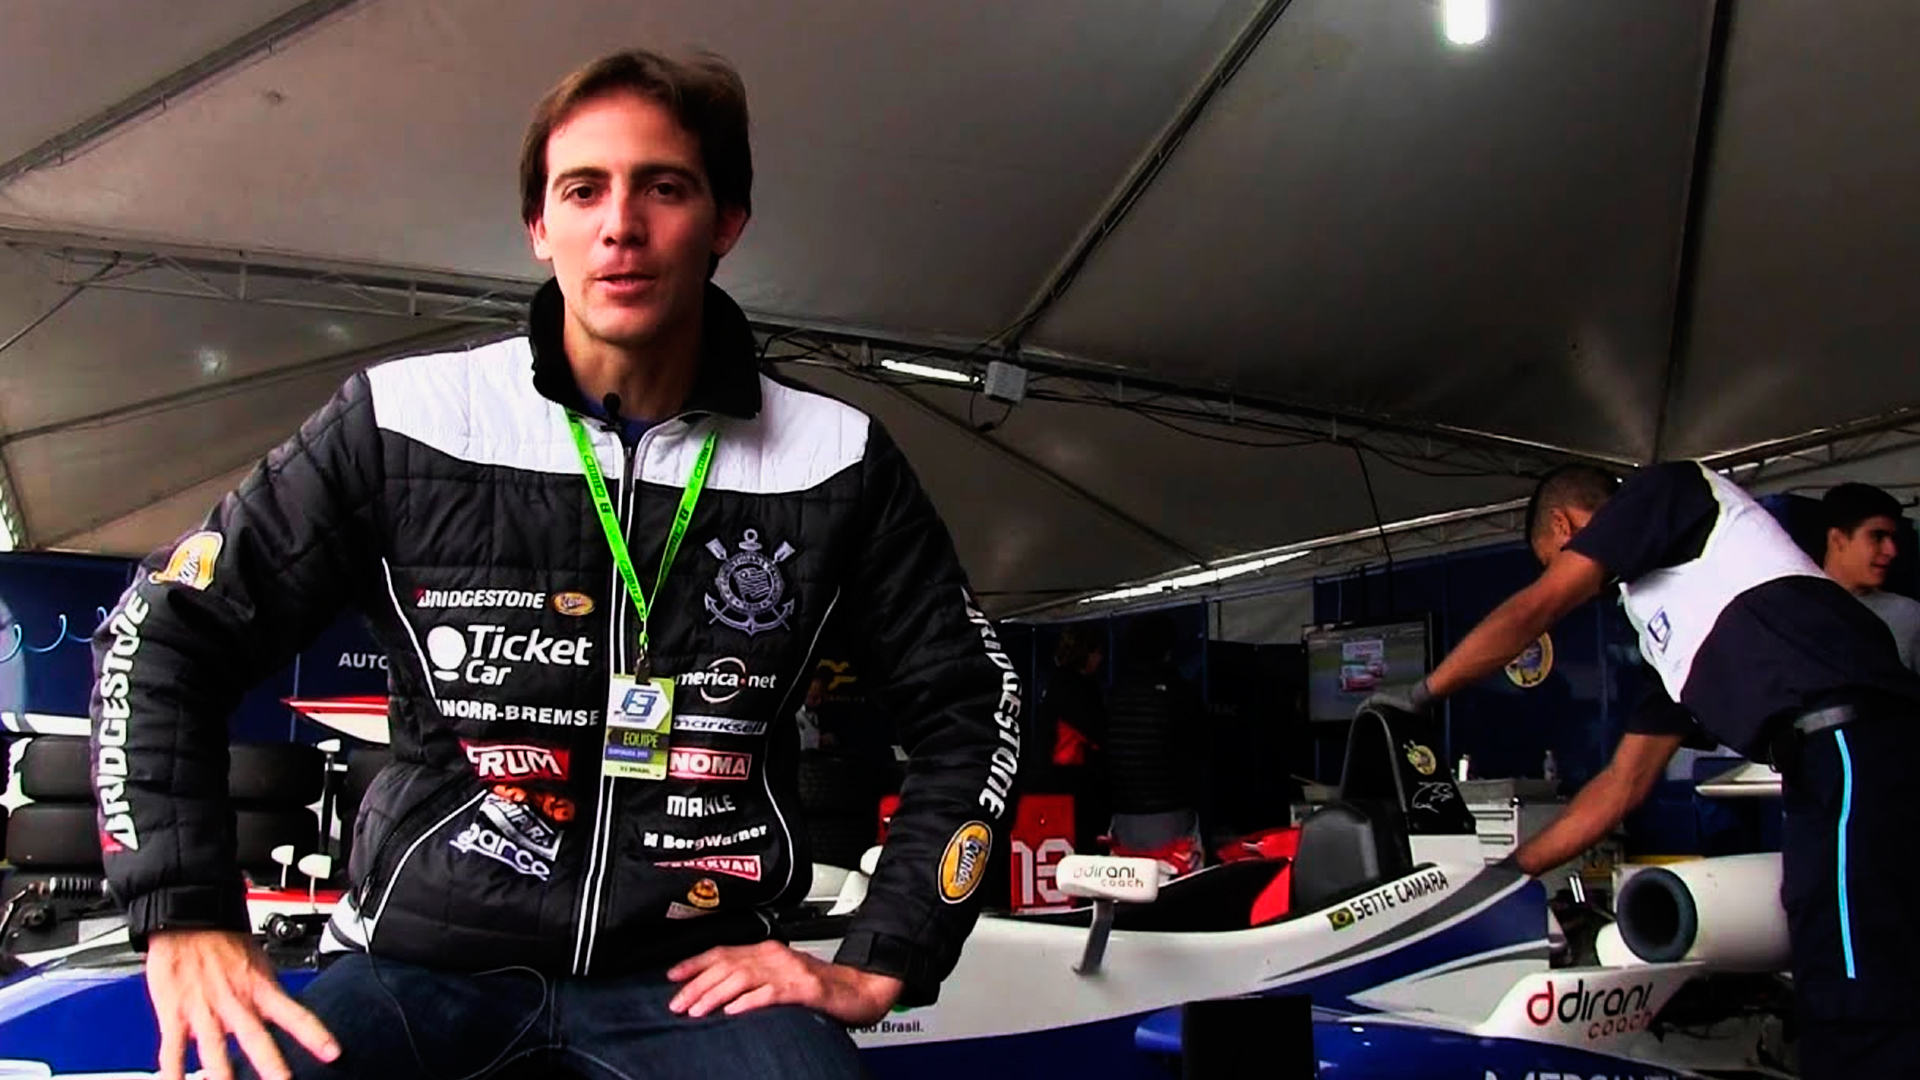 Danili Dirani, campeão de kart, sentado em cima de um carro de formula 1, como se estivesse conversando com a câmera.